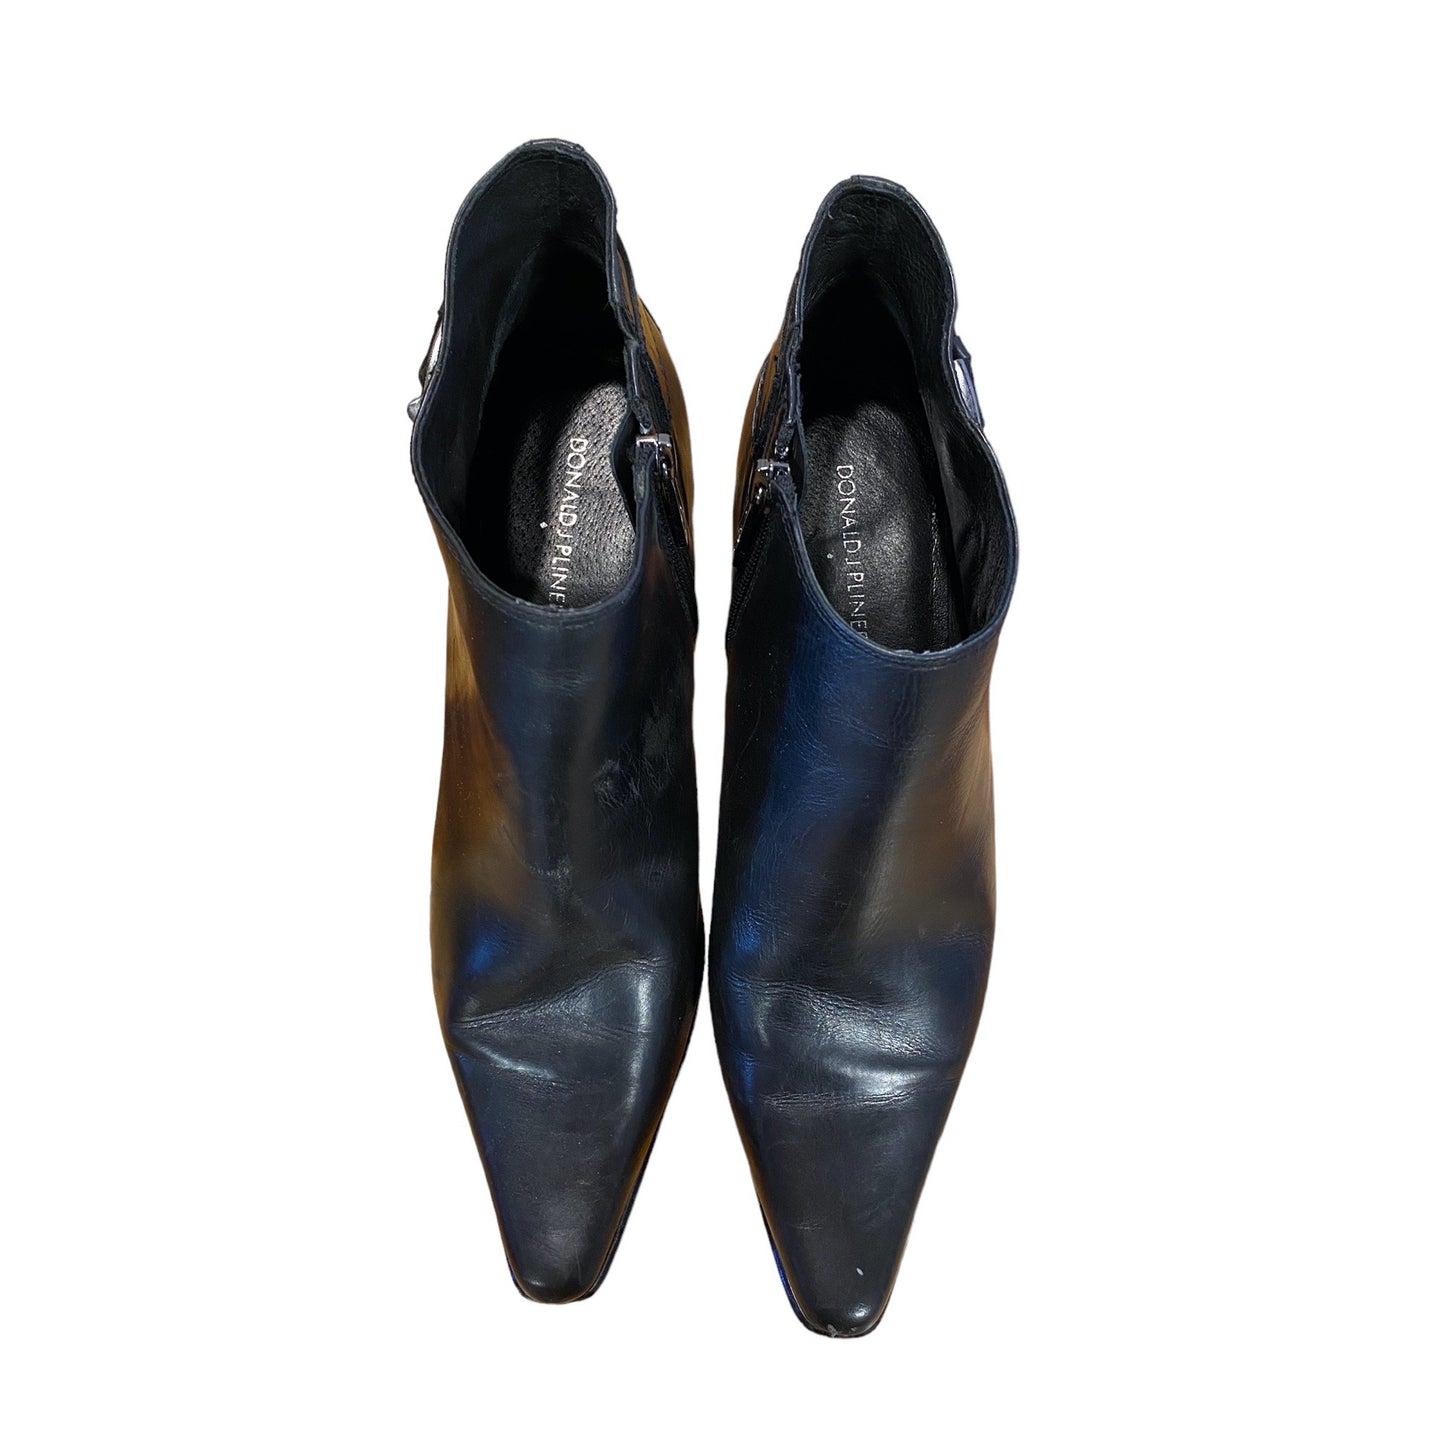 Donald J Pliner women's black thin-heeled booties